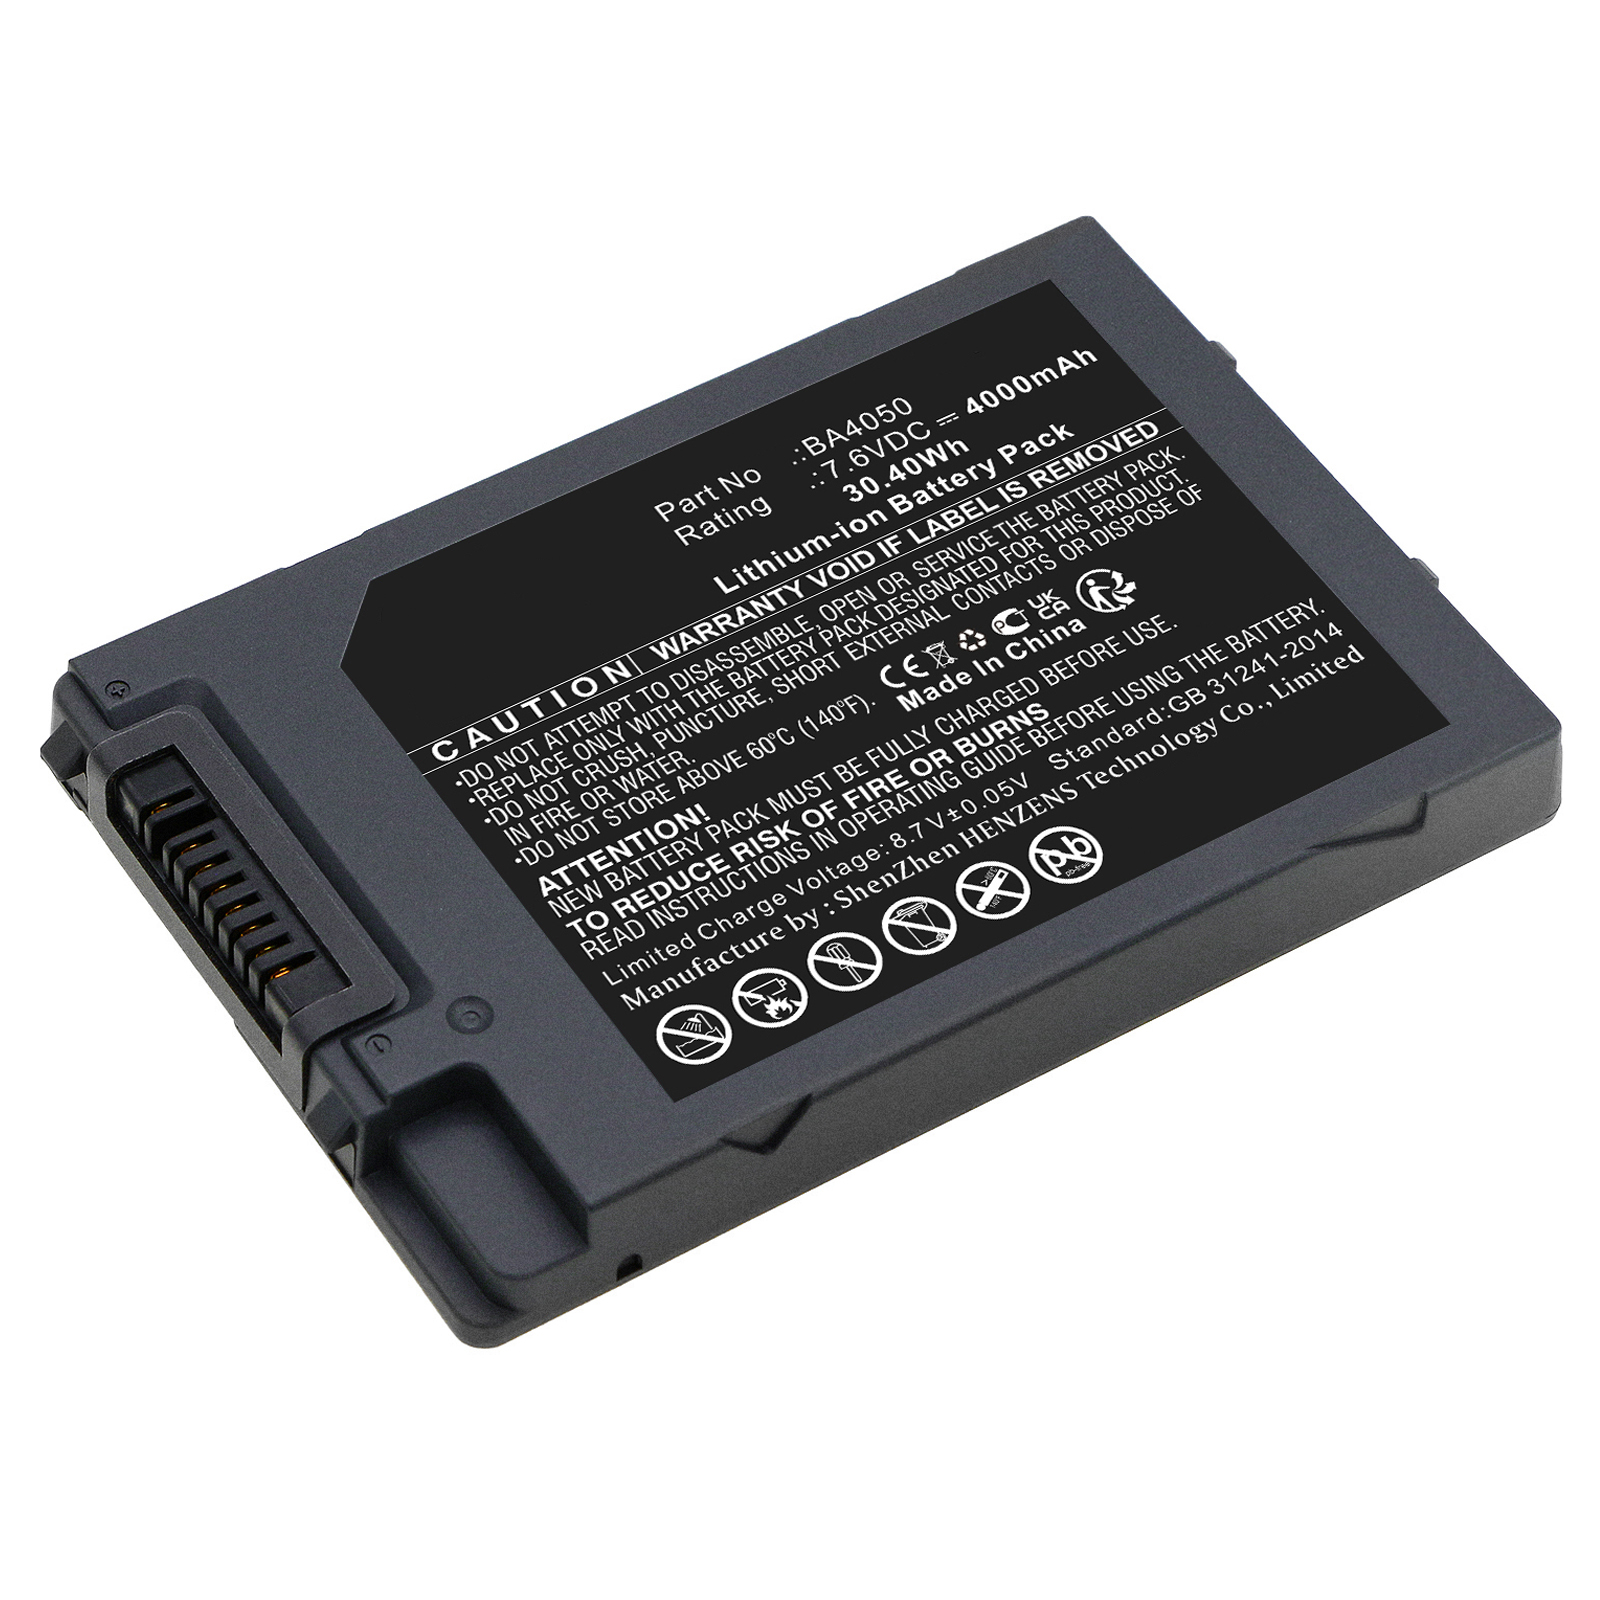 Batteries for UnistrongEquipment